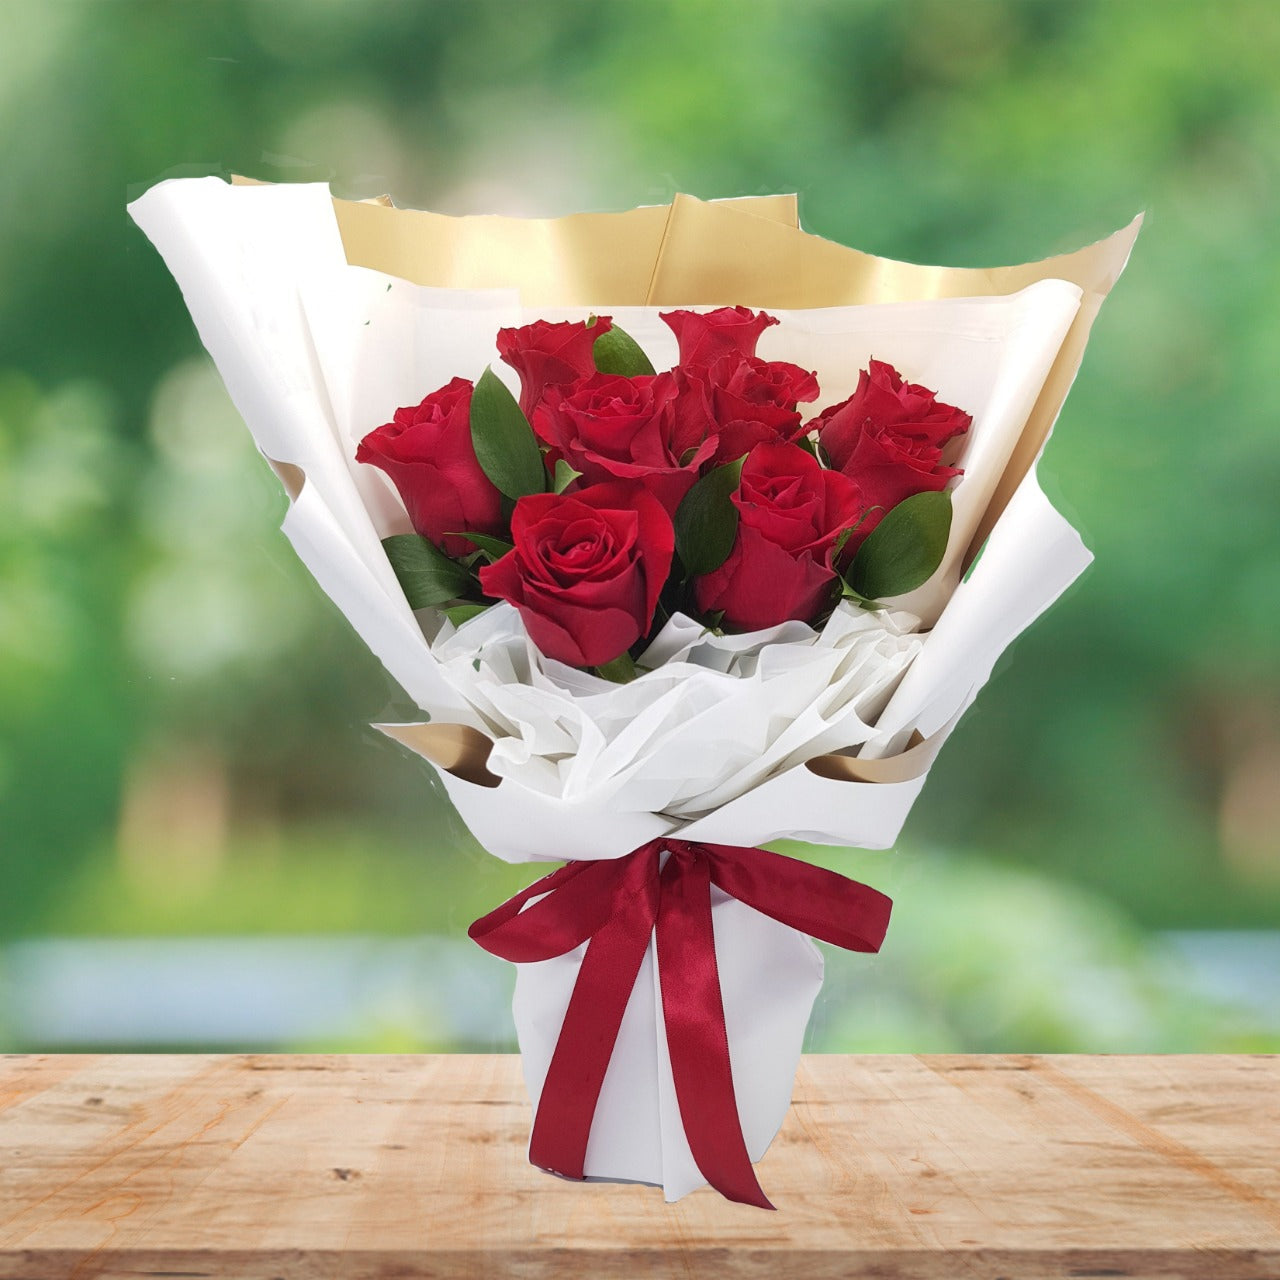 10 Red Roses Bouquet Arrangement